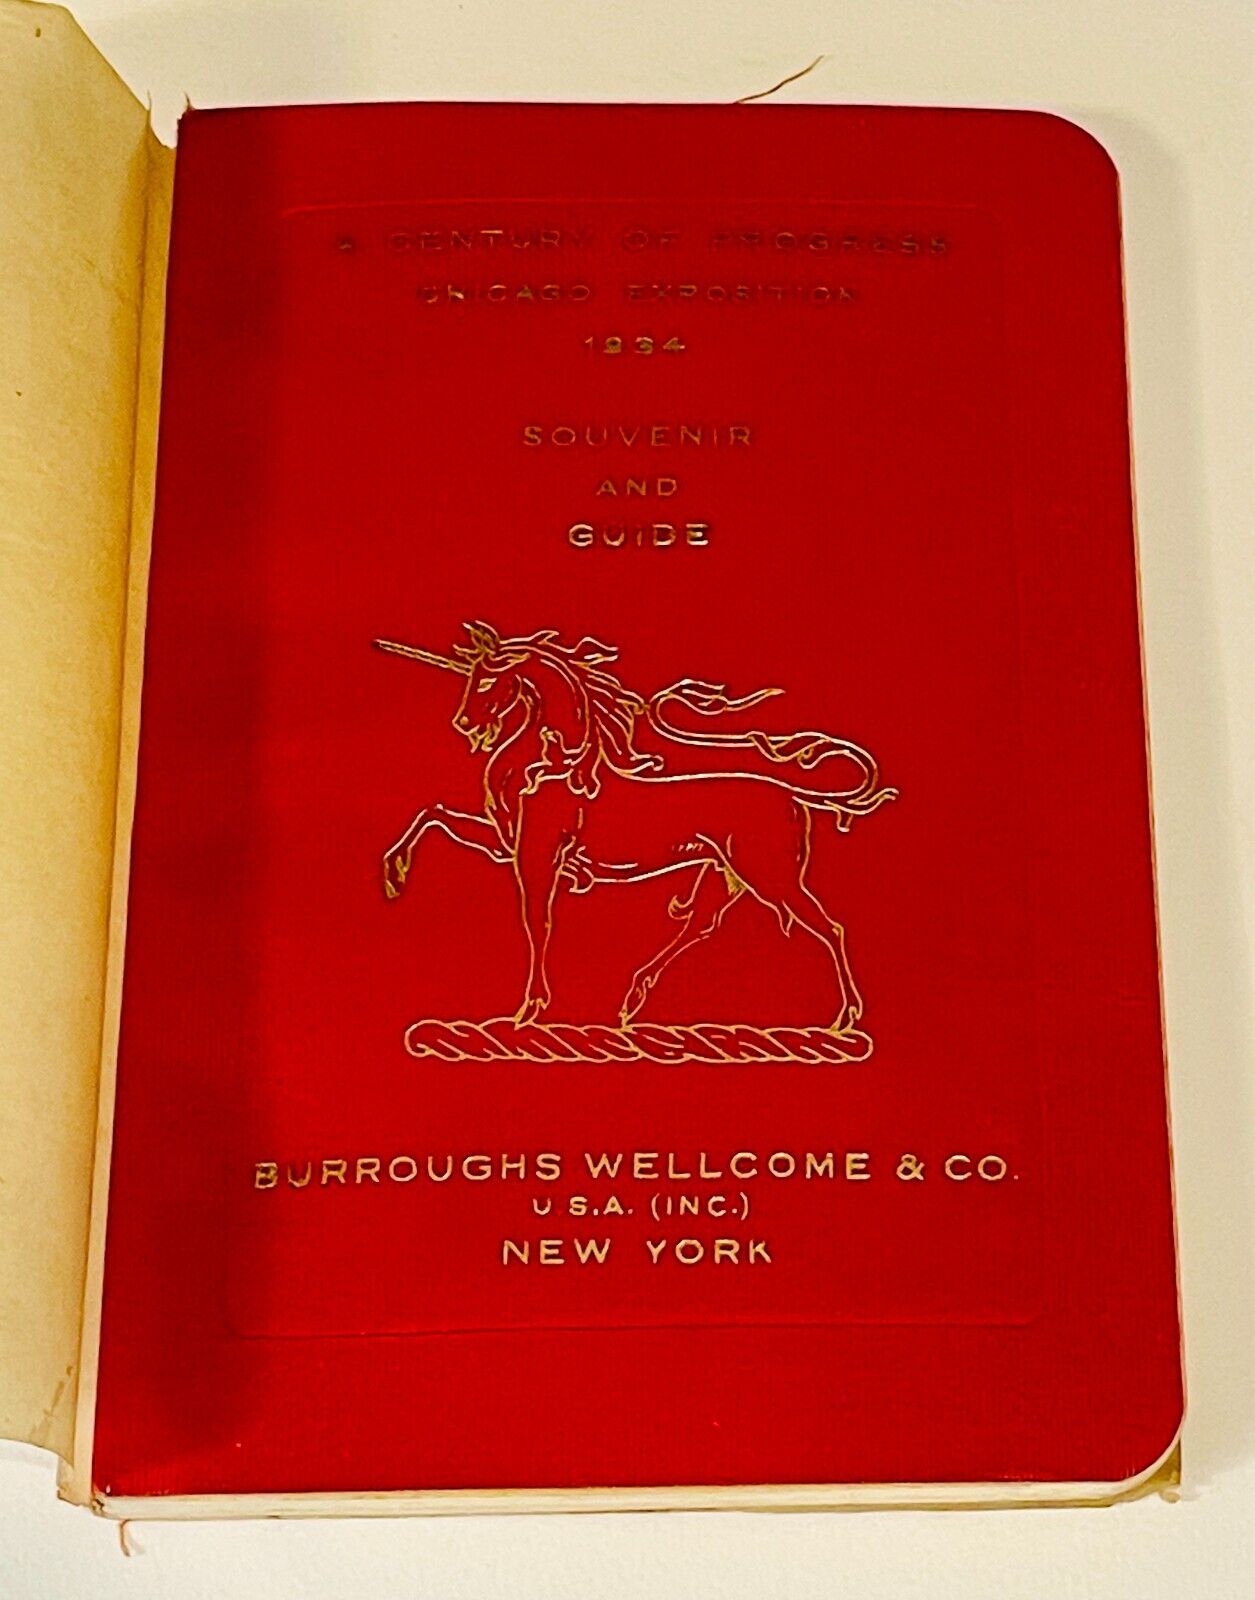 1934 Burroughs Wellcome & Co Chicago Exposition Pharmacy Tabloid Souvenir Book